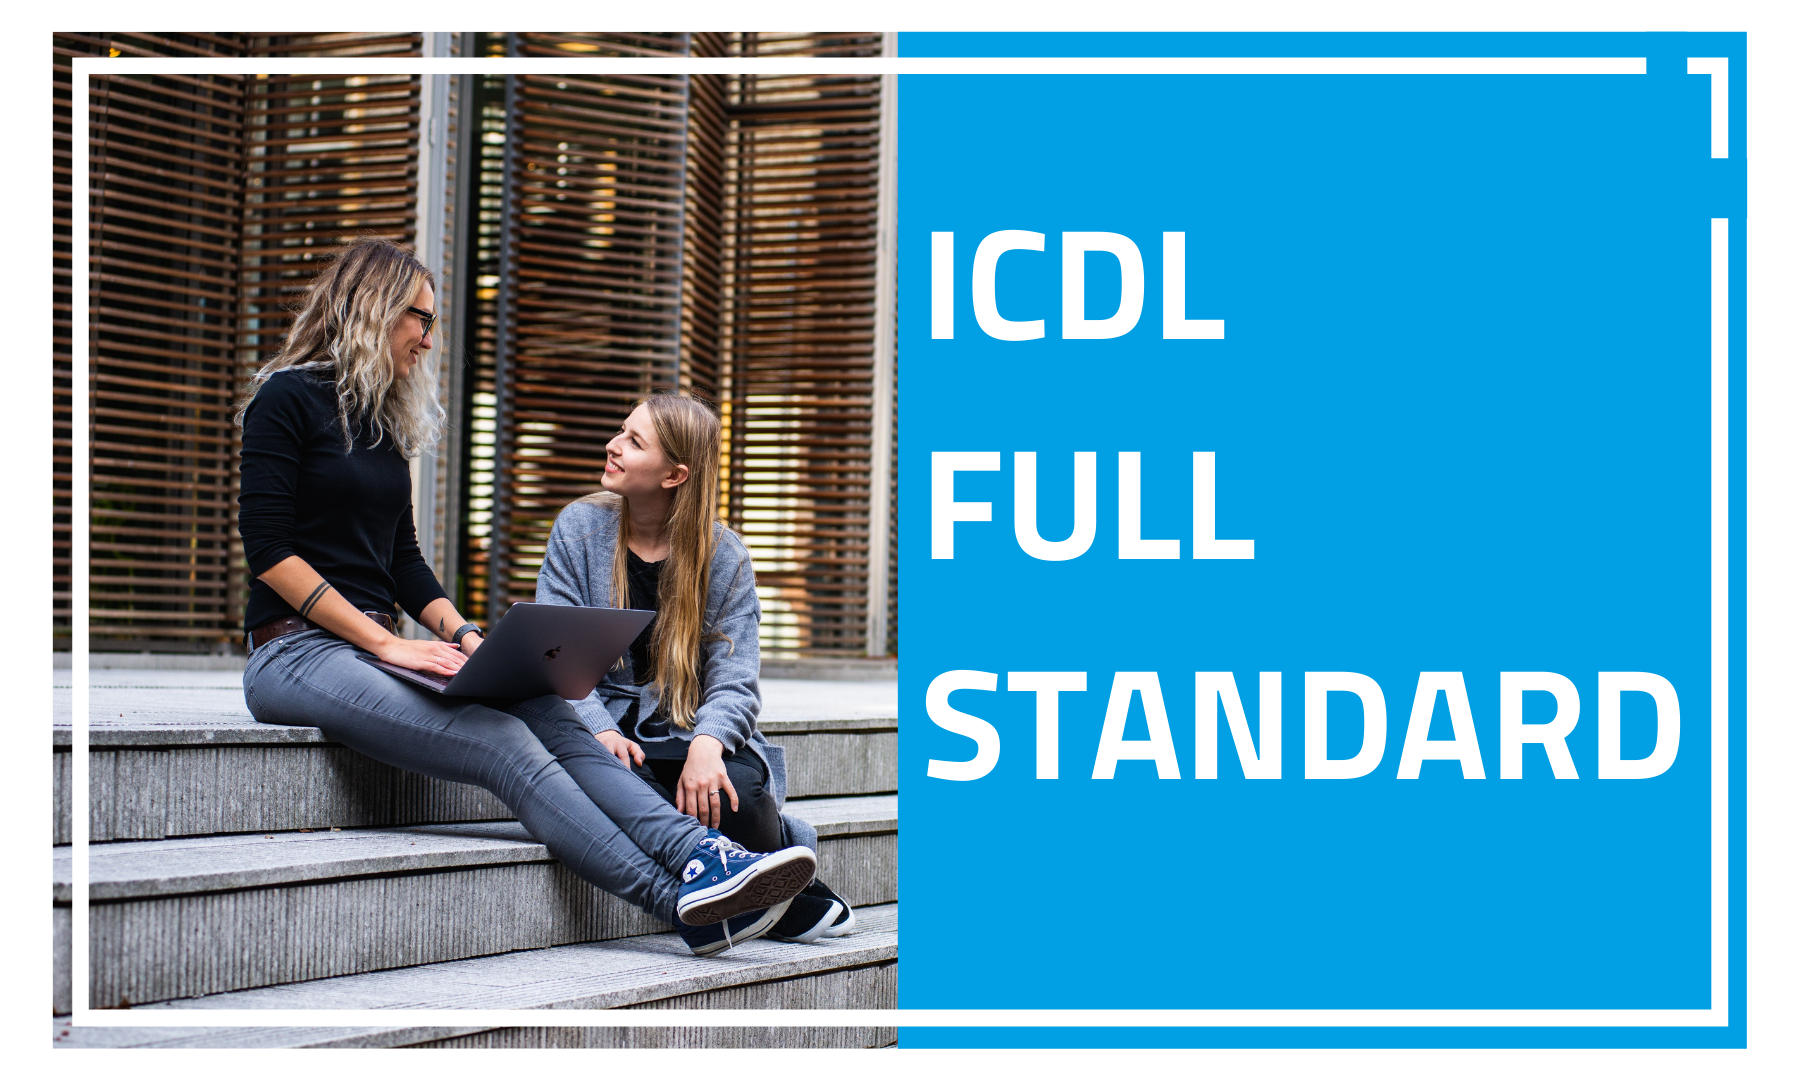 Con il corso ECDL full standard otterrai un livello avanzato di competenze informatiche e digitali